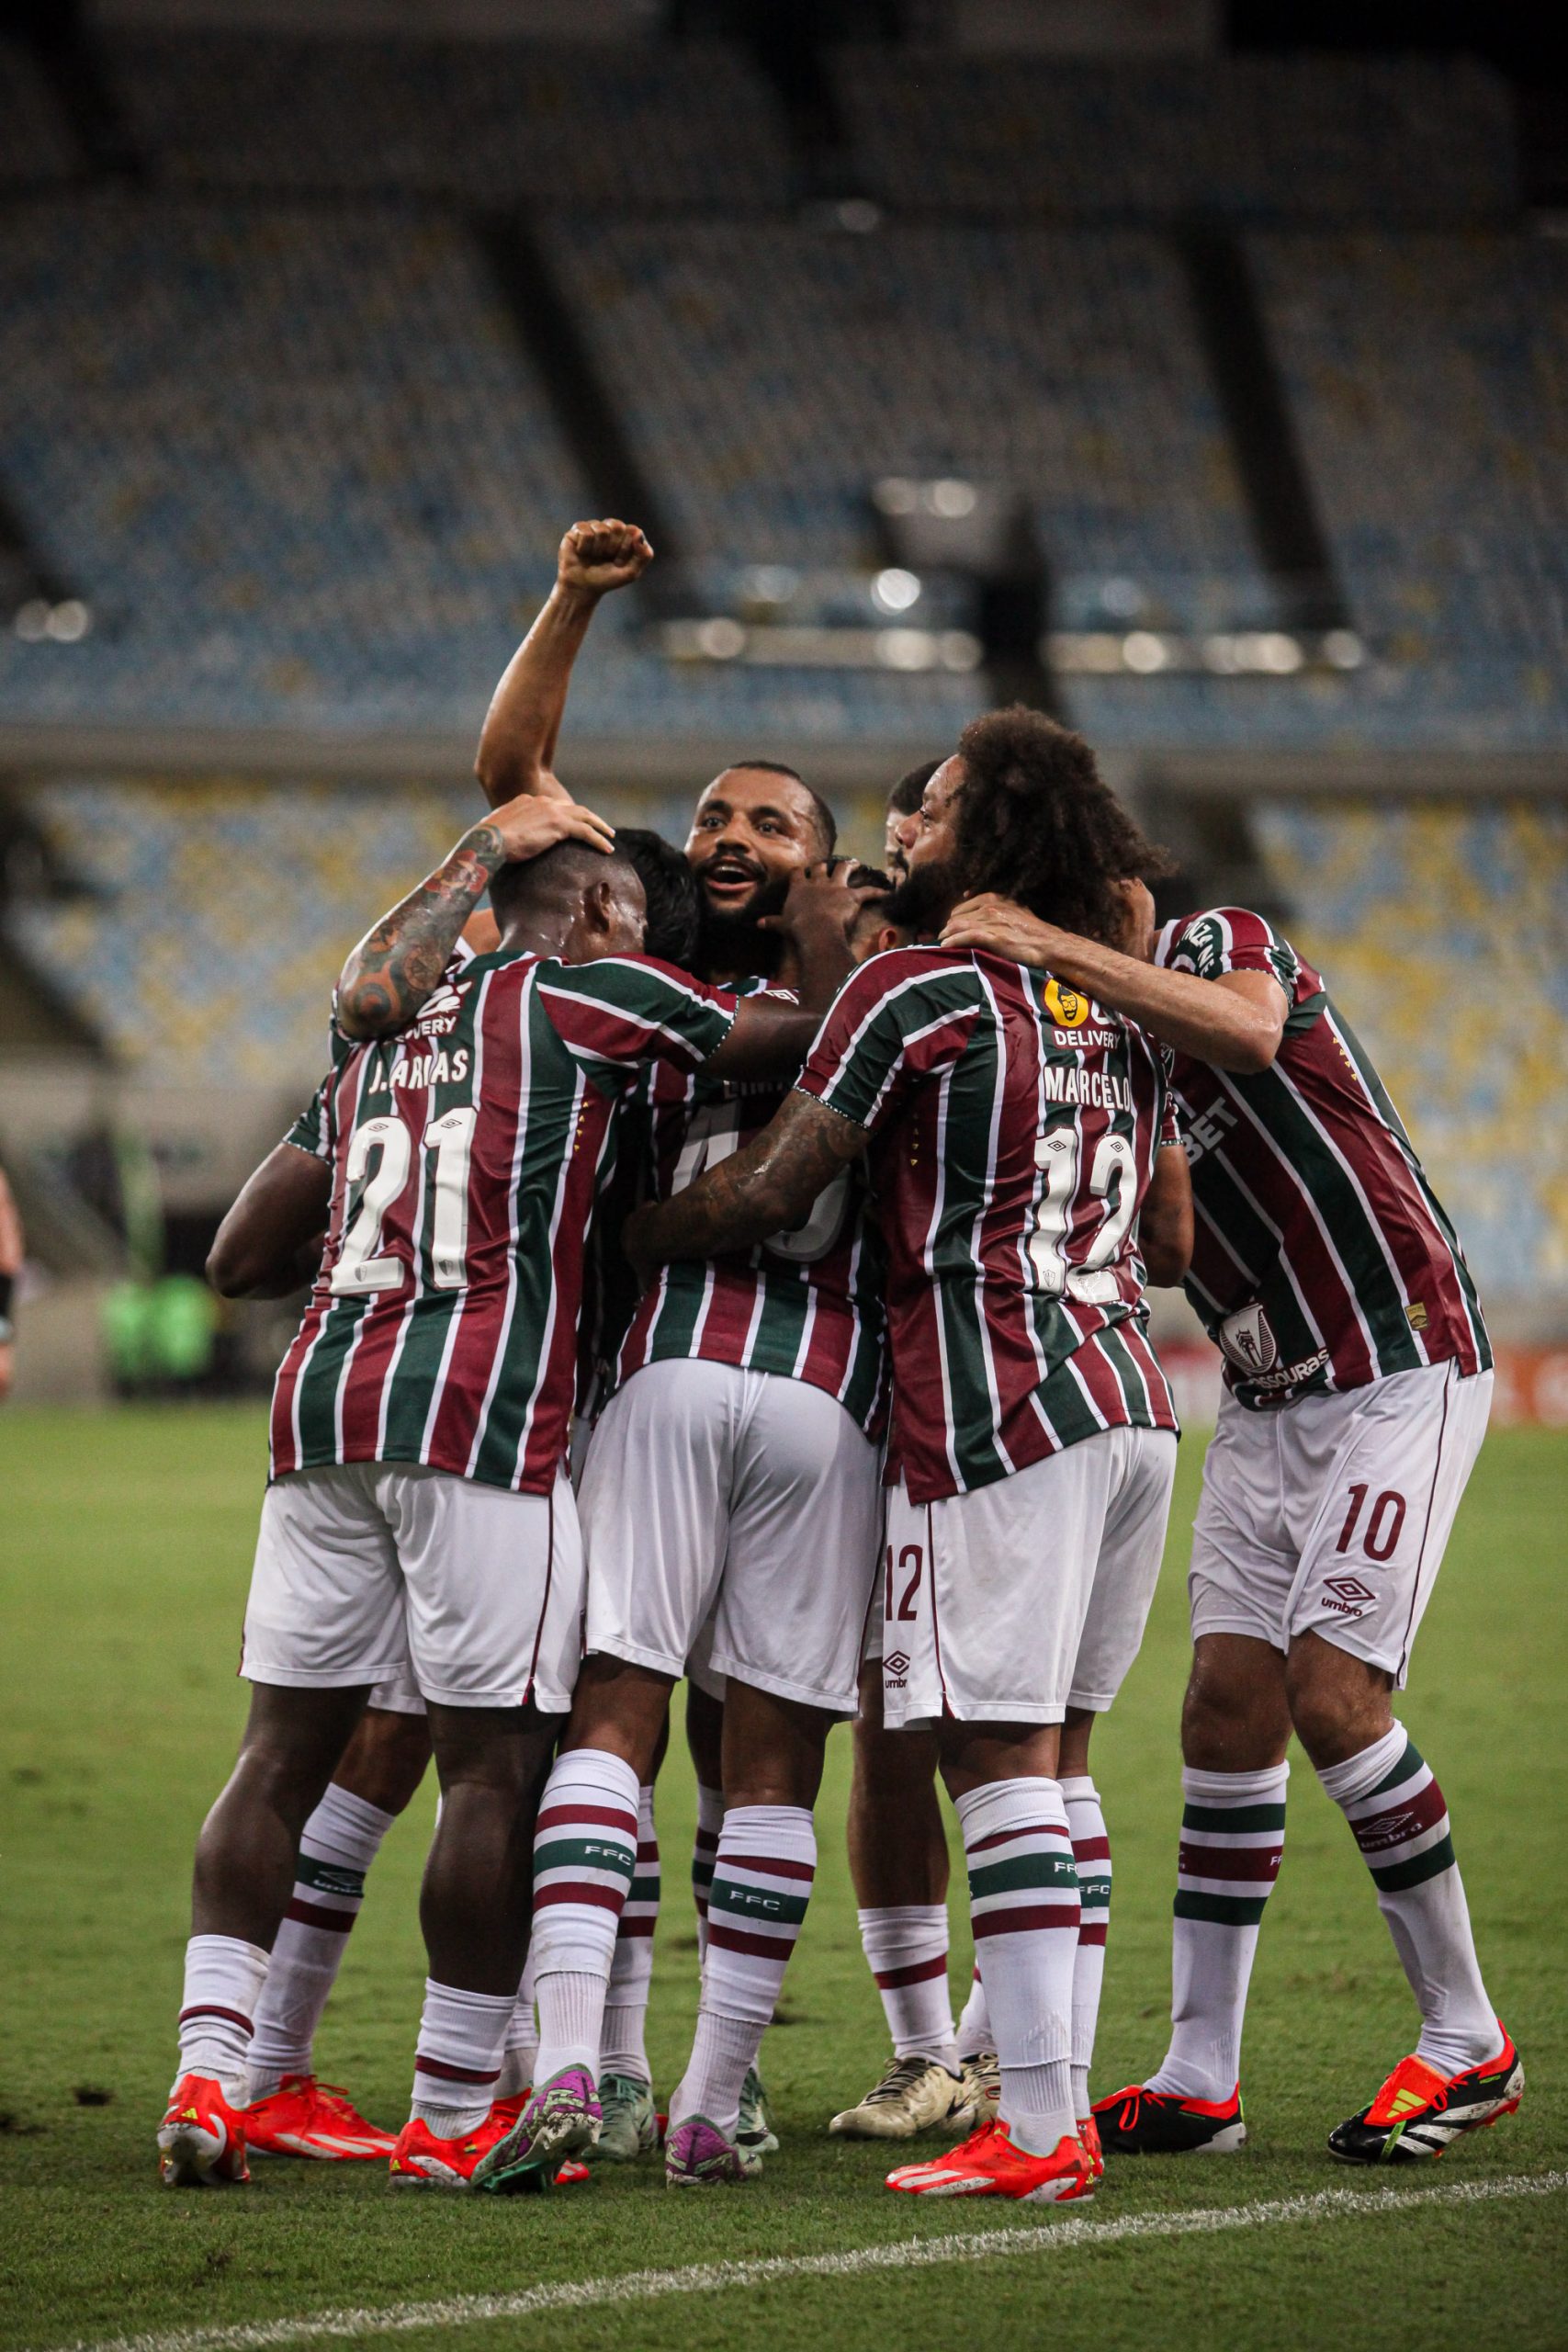 Lima marcou os dois gols do Fluminense em estreia no campeonato brasileiro (FOTO DE MARCELO GONÇALVES / FLUMINENSE FC)